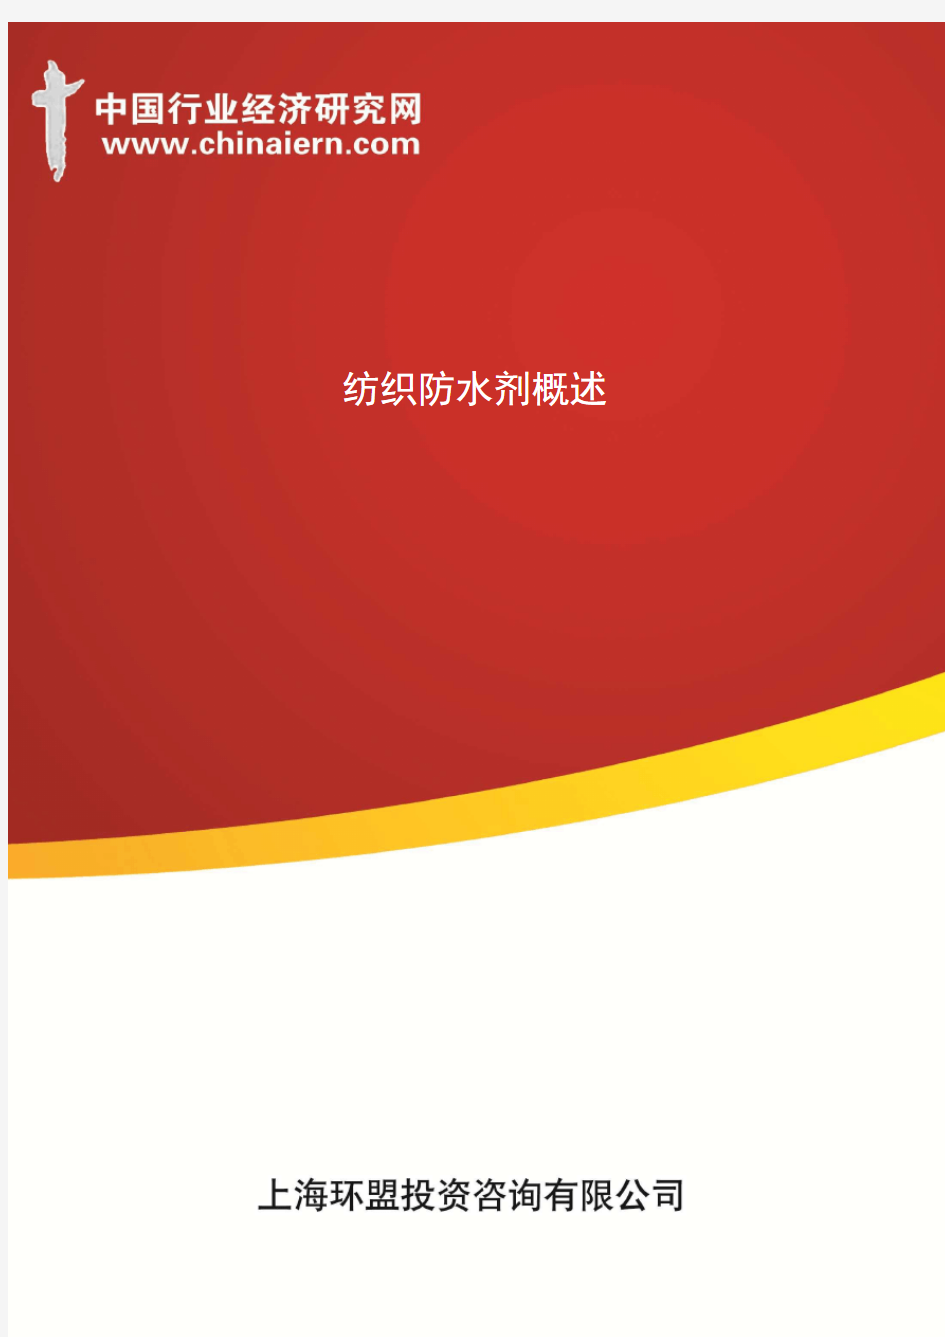 纺织防水剂概述(上海环盟)